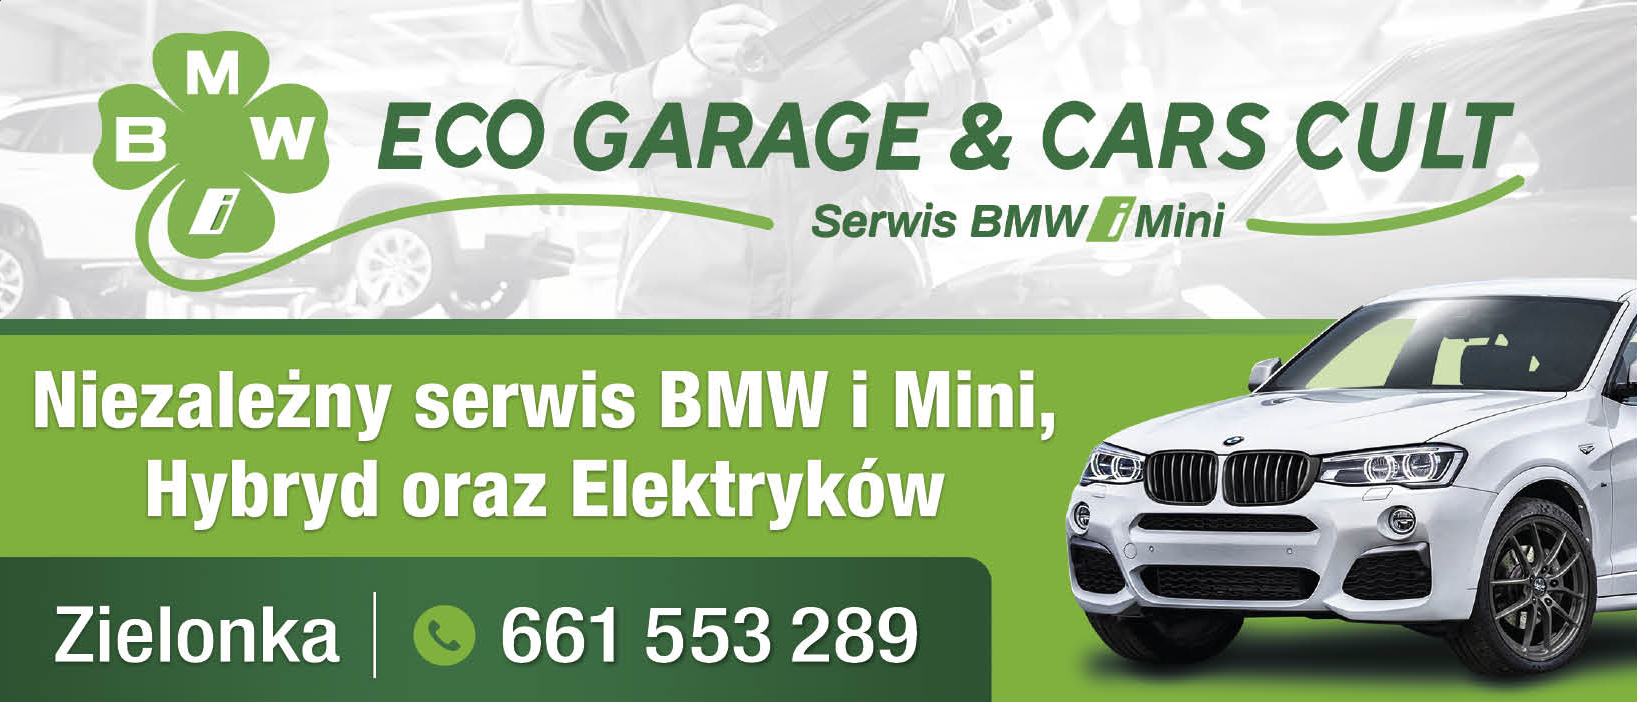 ECO GARAGE & CARS CULT Zielonka Niezależny Serwis BMW i Mini, Hybryd oraz Elektryków